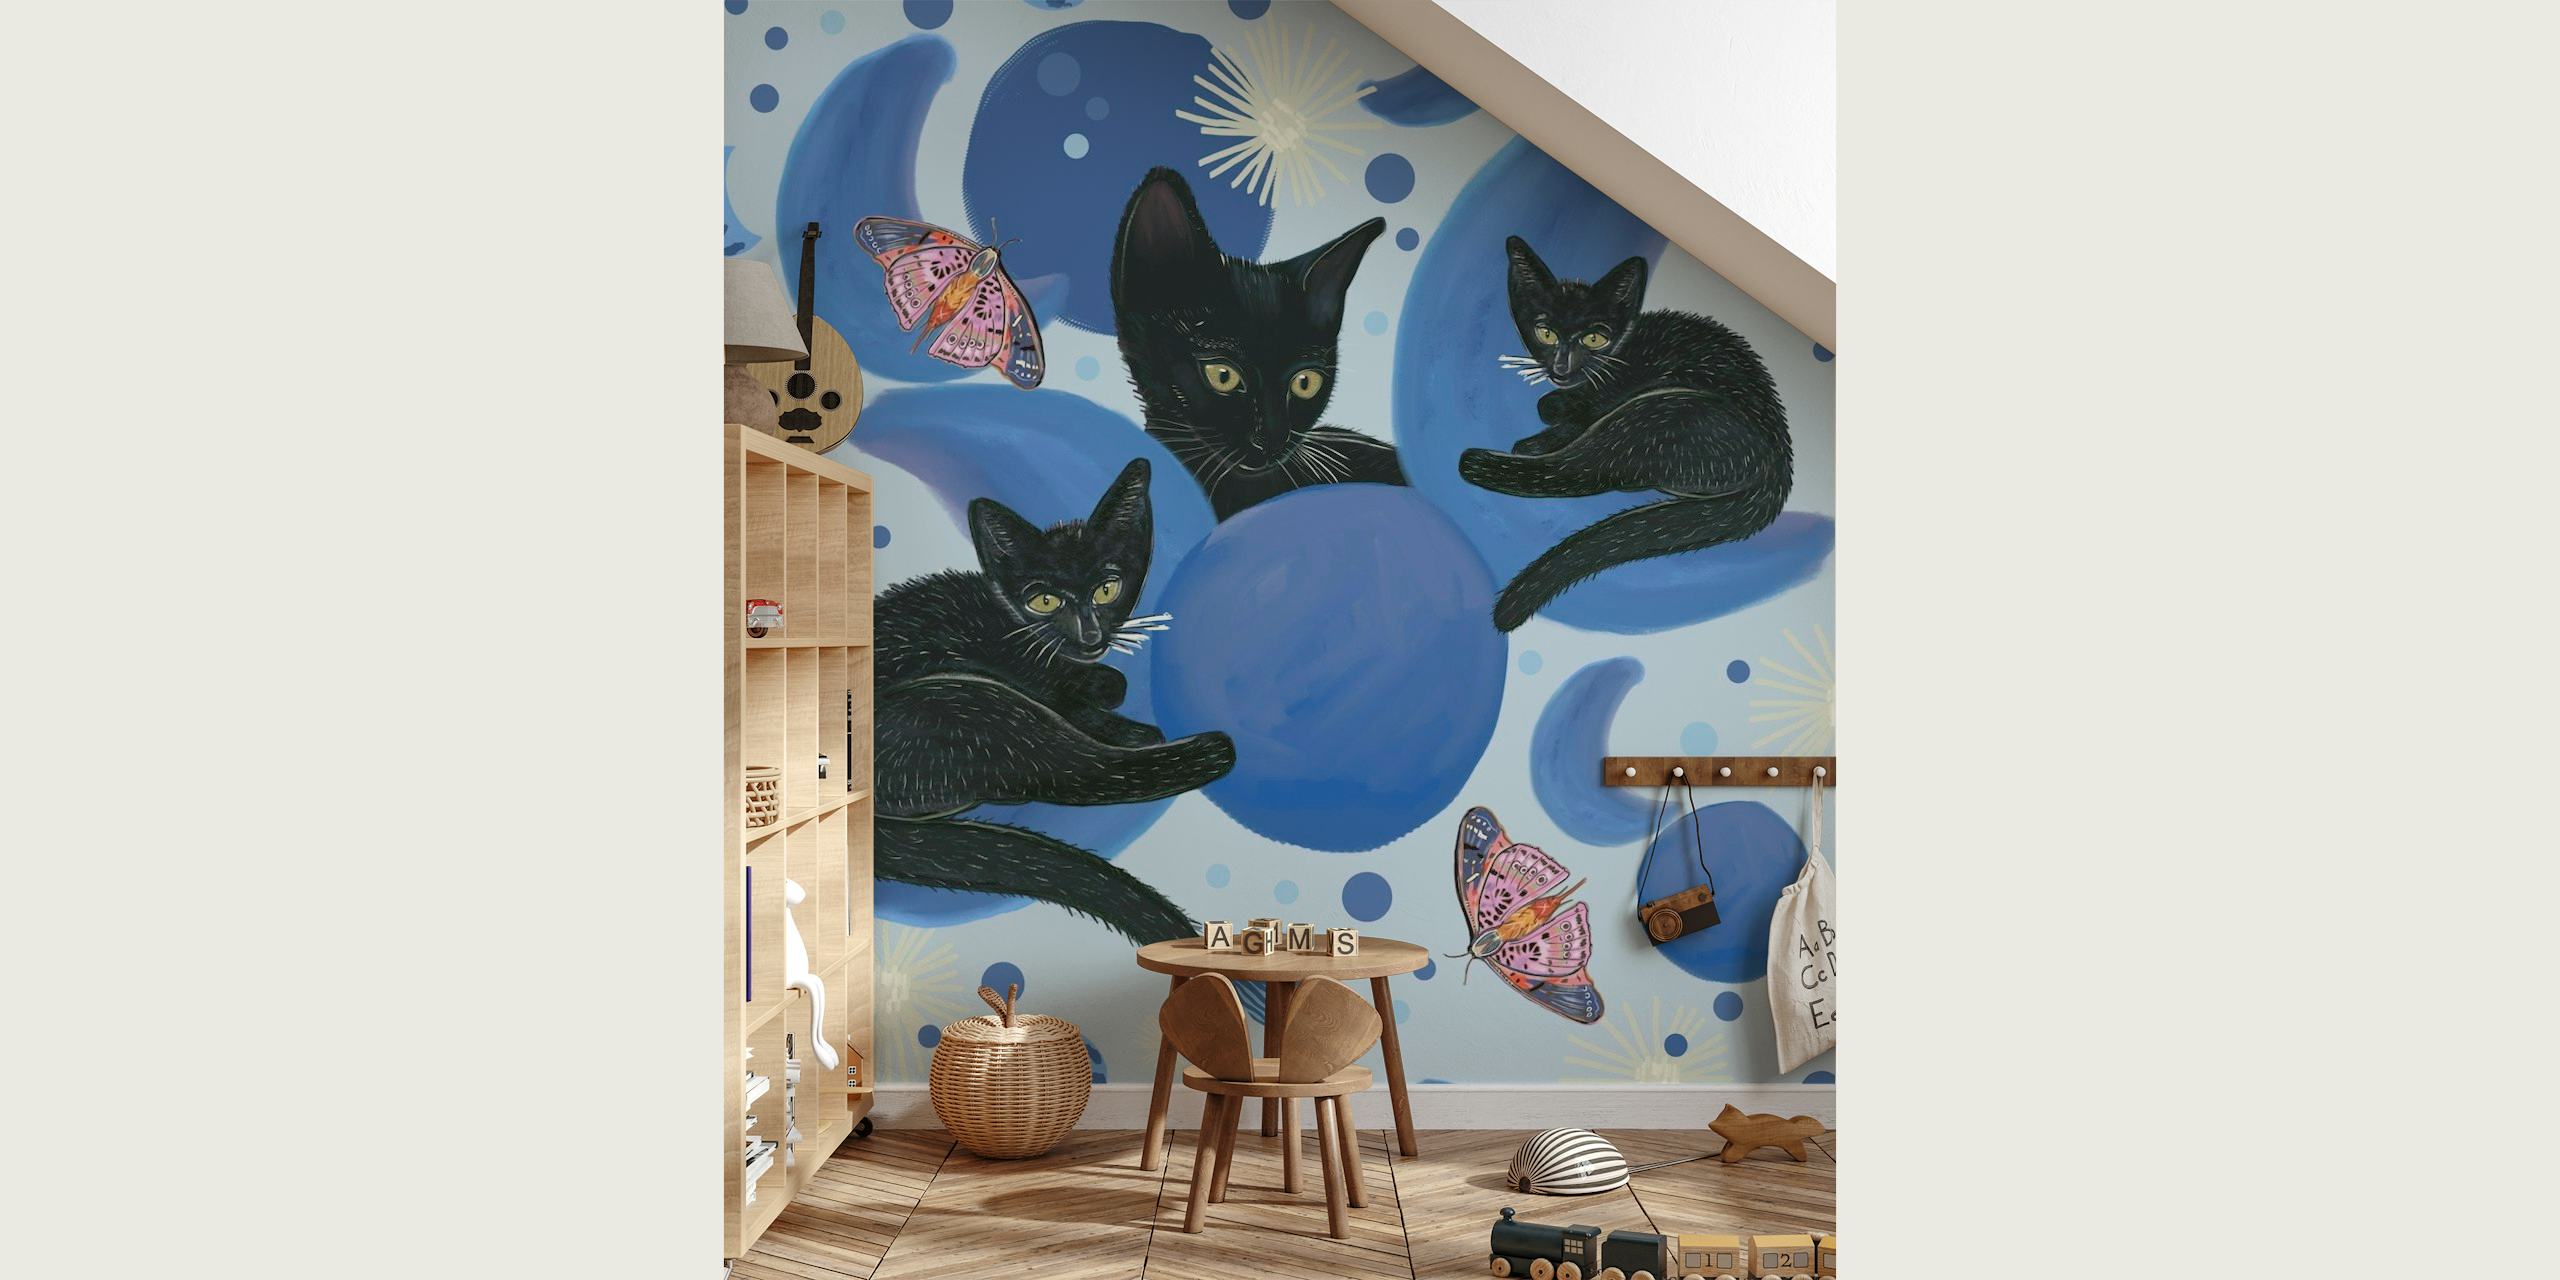 Gatti neri intervallati da fasi lunari e stelle su un murale